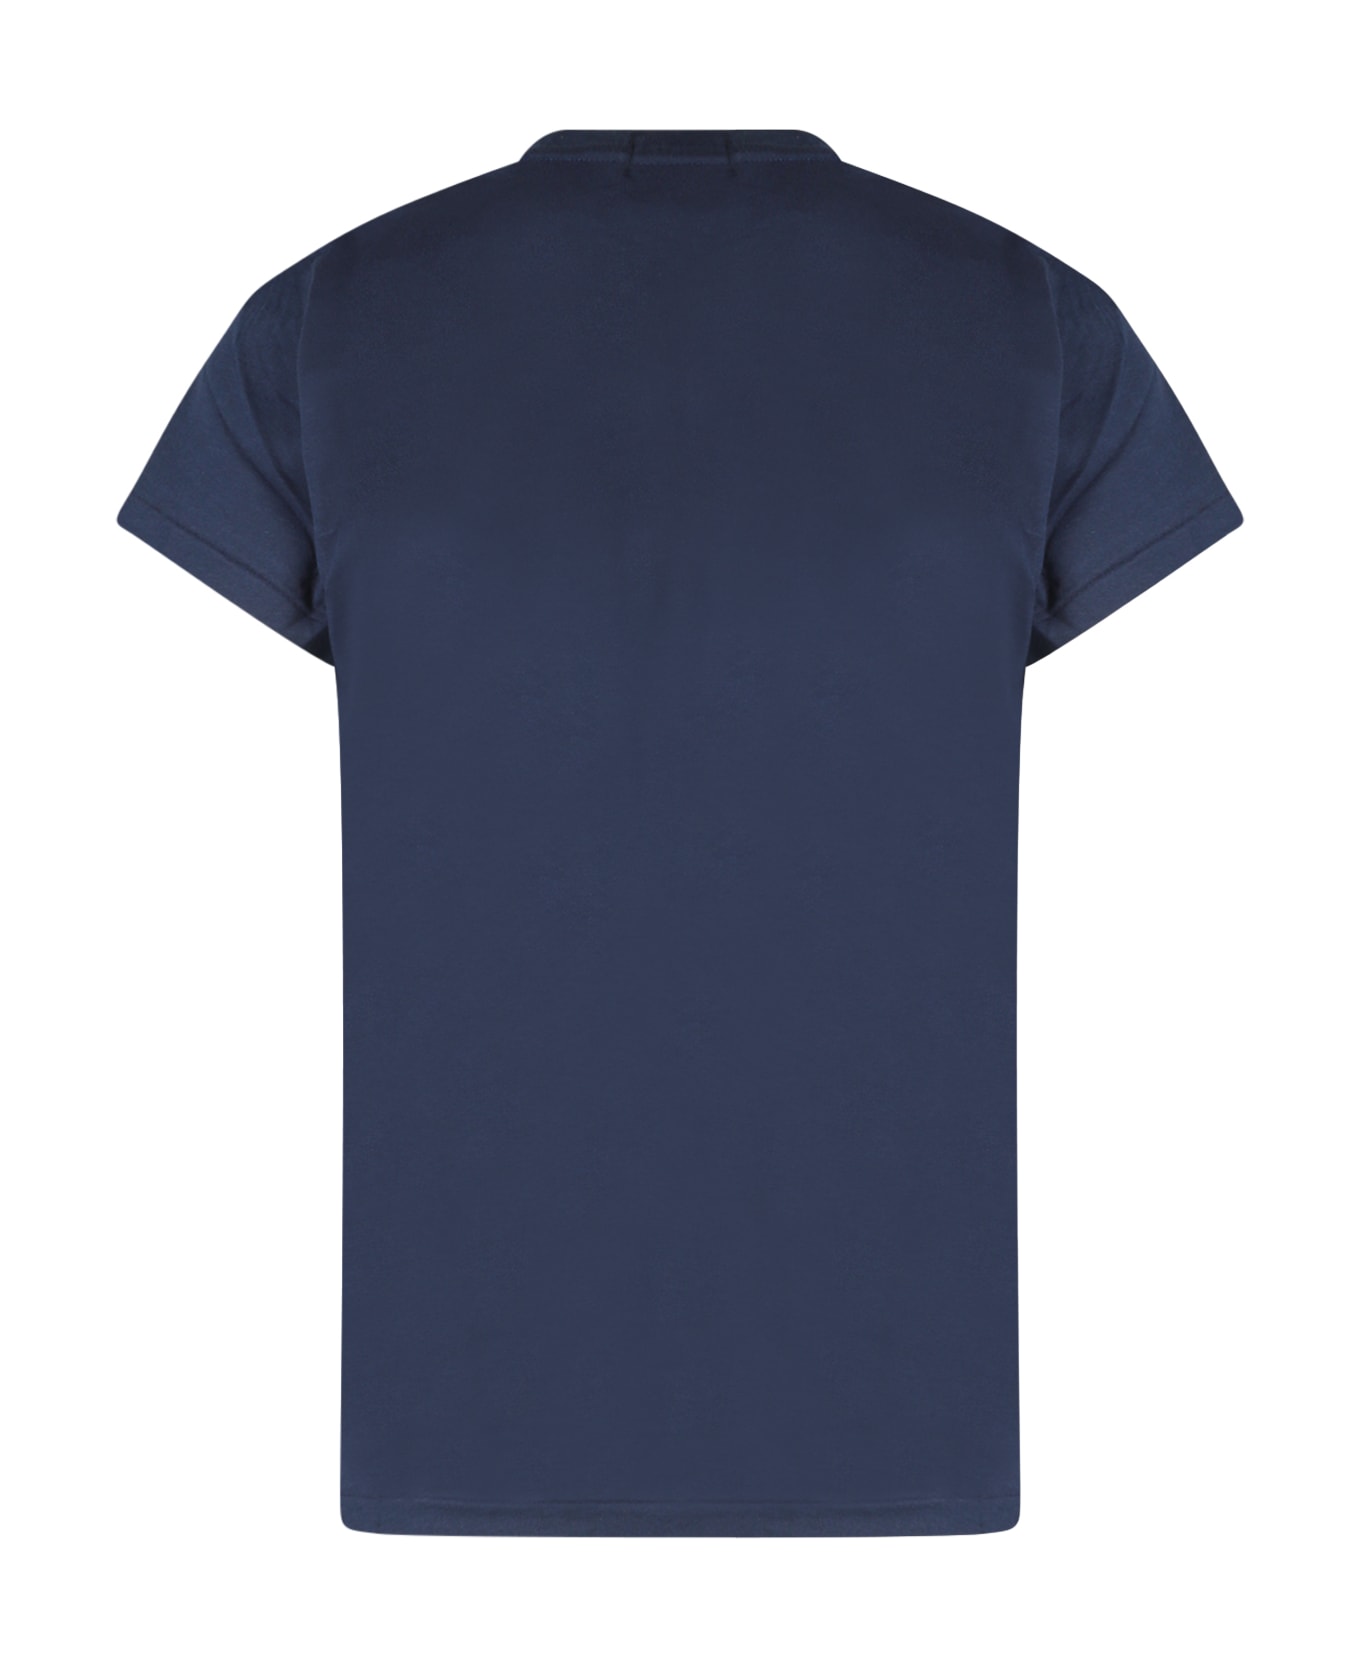 Ralph Lauren T-shirt - Cruise Navy